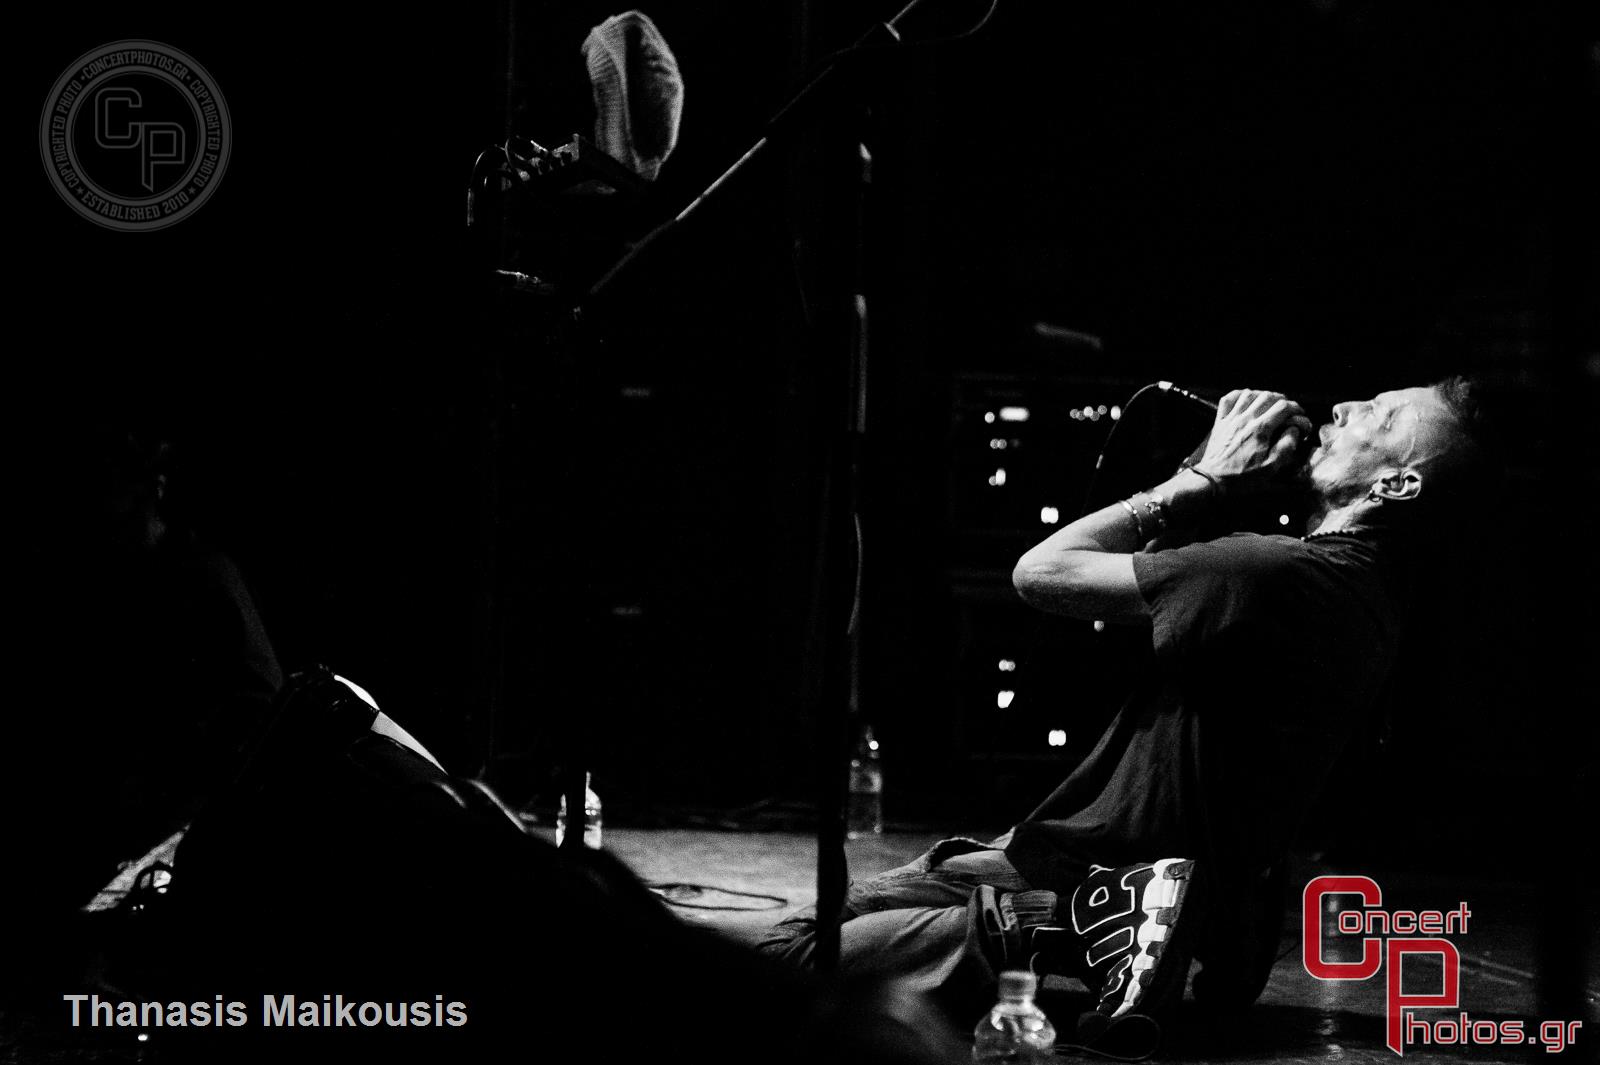 Stereo Mc's-Stereo Mcs photographer: Thanasis Maikousis - ConcertPhotos - 20141129_2337_17